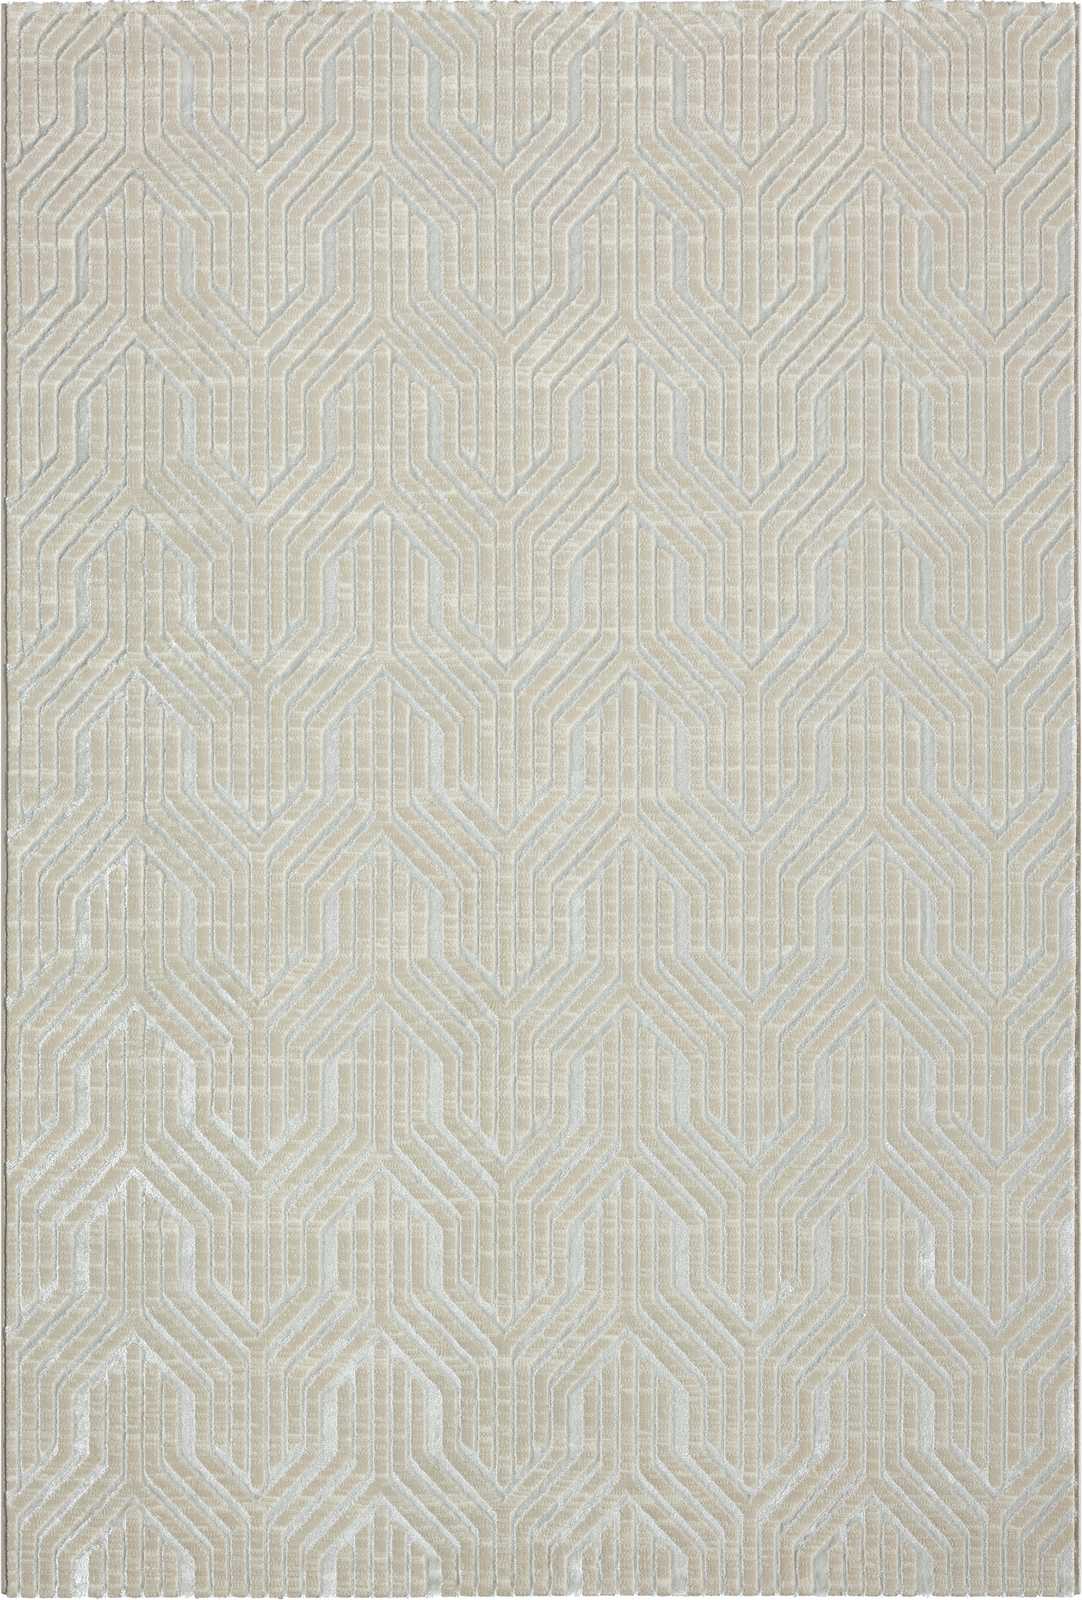             Zachtpolig tapijt in crème - 290 x 200 cm
        